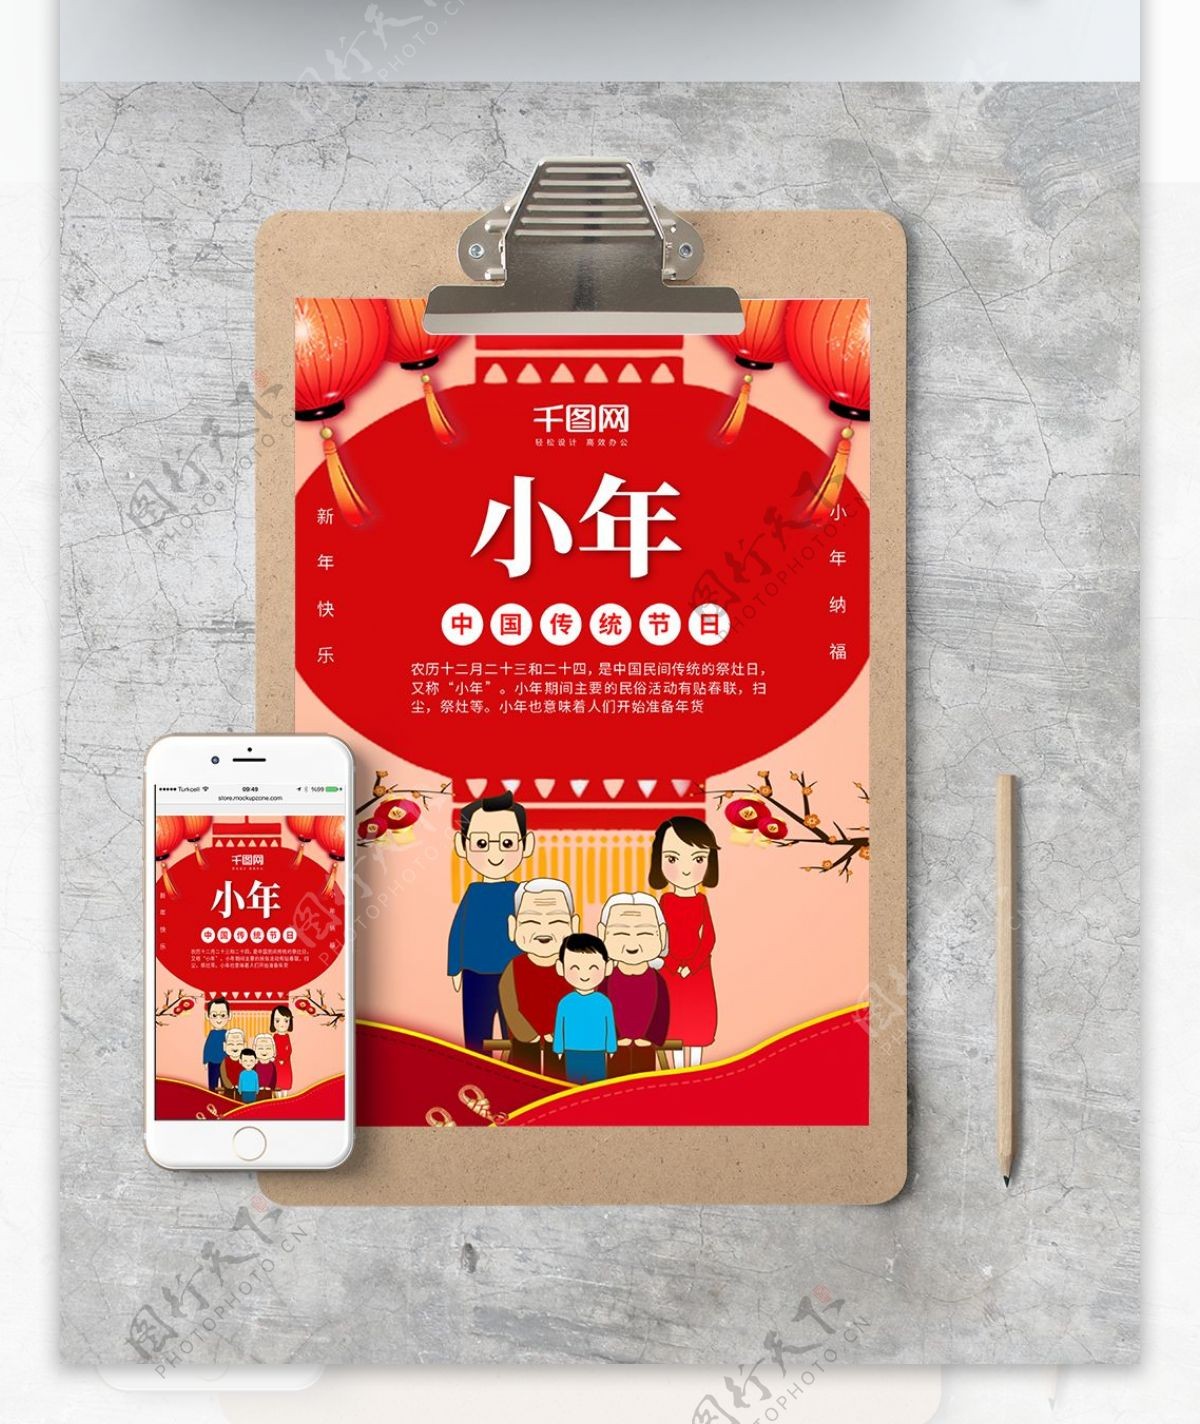 红色喜庆小年传统节日WORD海报